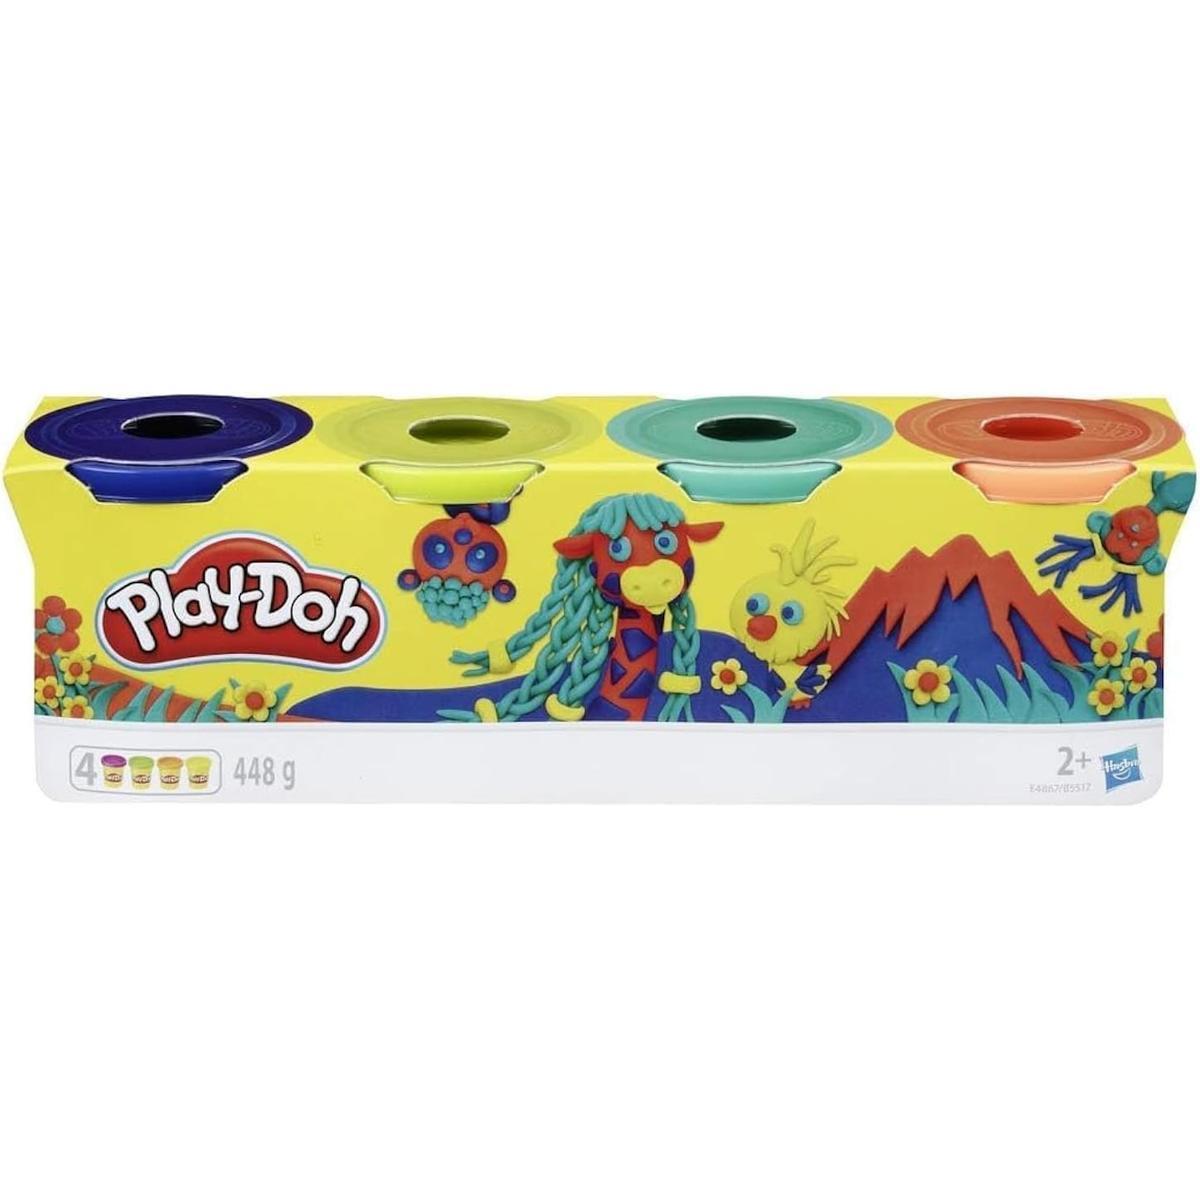 Ciastolina kolorowa zestaw tub mix kolorów hasbro 4-pak e4867 play-doh dla dziecka nr. 2